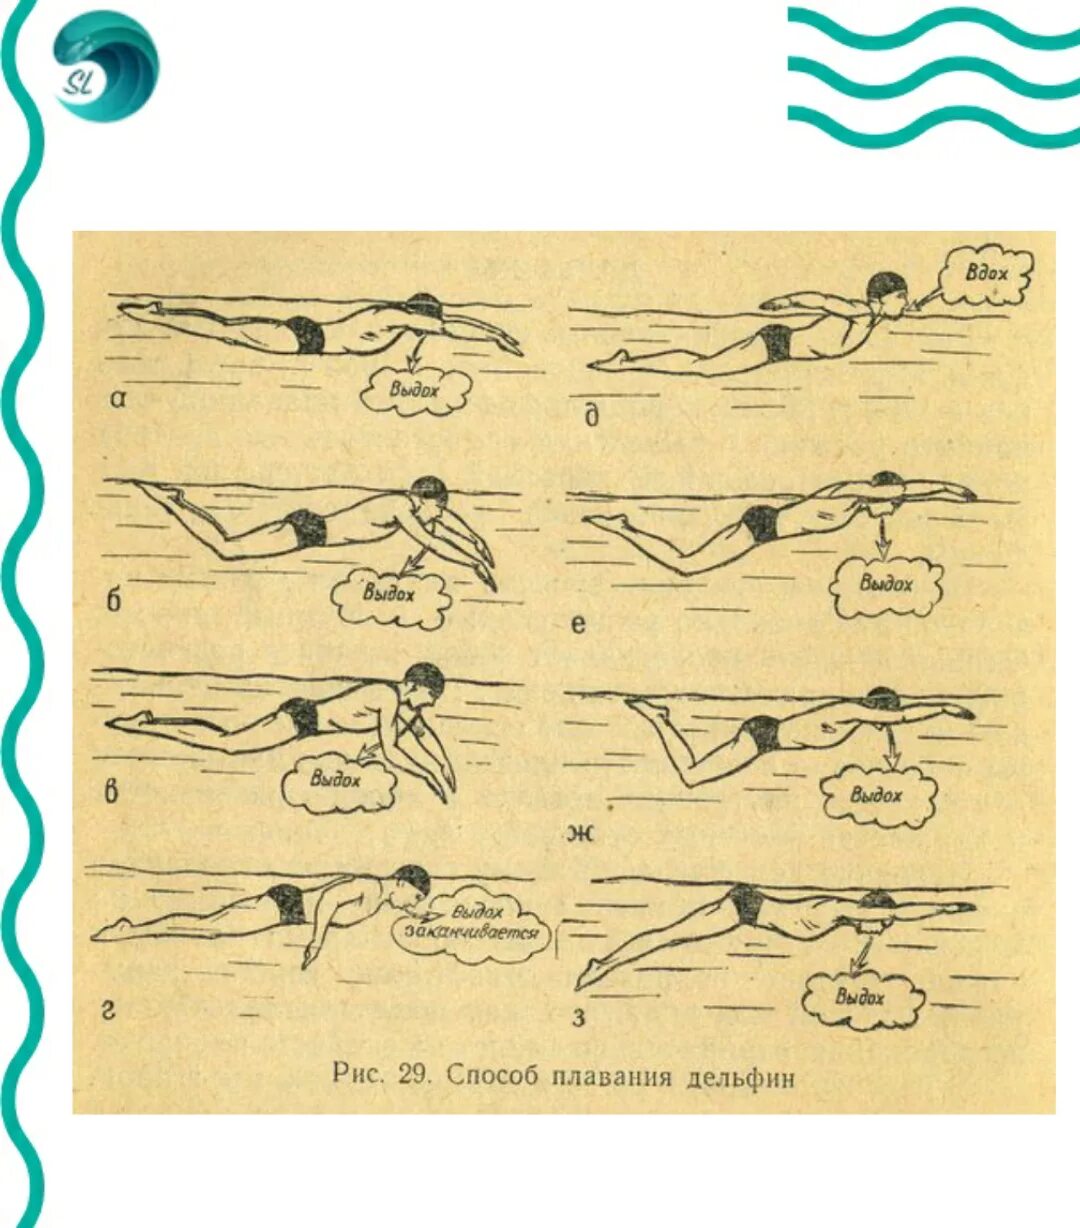 Техники плавания Баттерфляй. Стиль плавания Баттерфляй техника. Техника плавания: стиль Баттерфляй (Дельфин). Техники плавания брасс Кроль Баттерфляй.